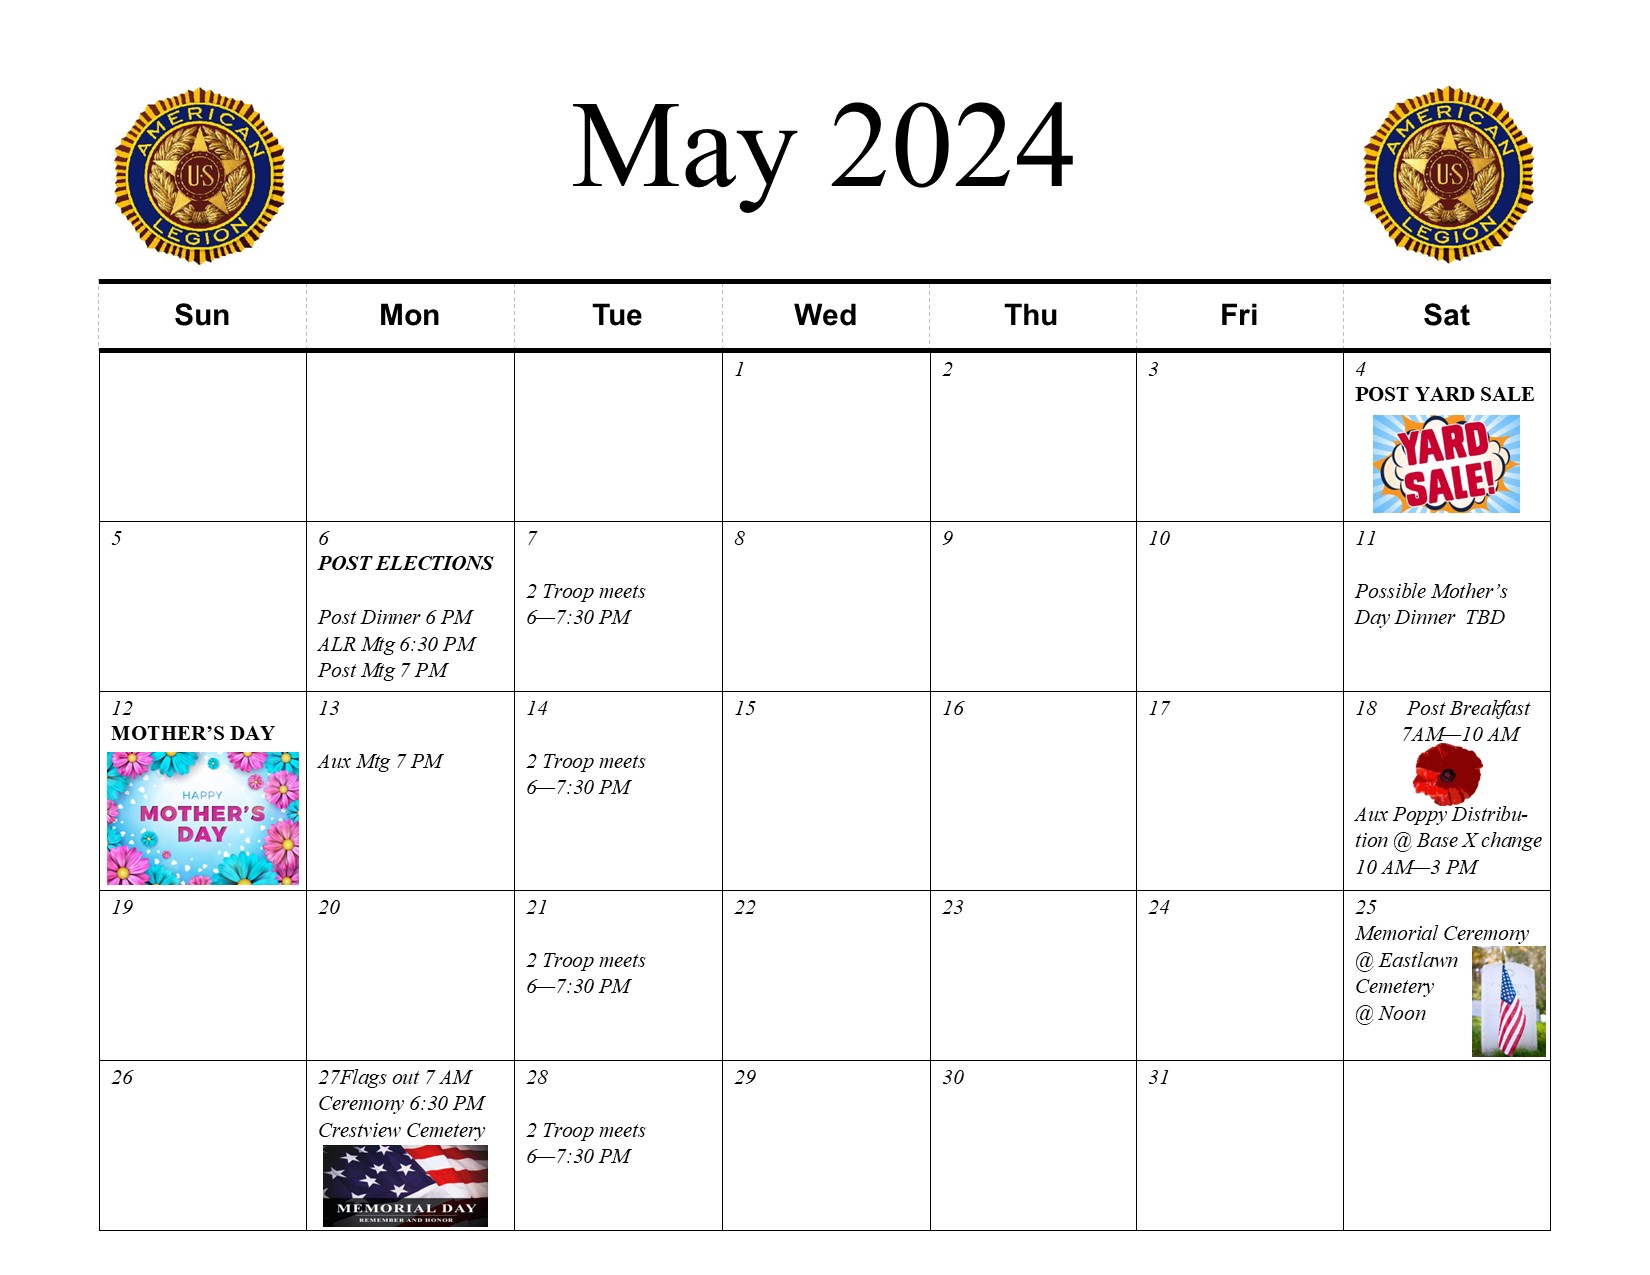 May 2024